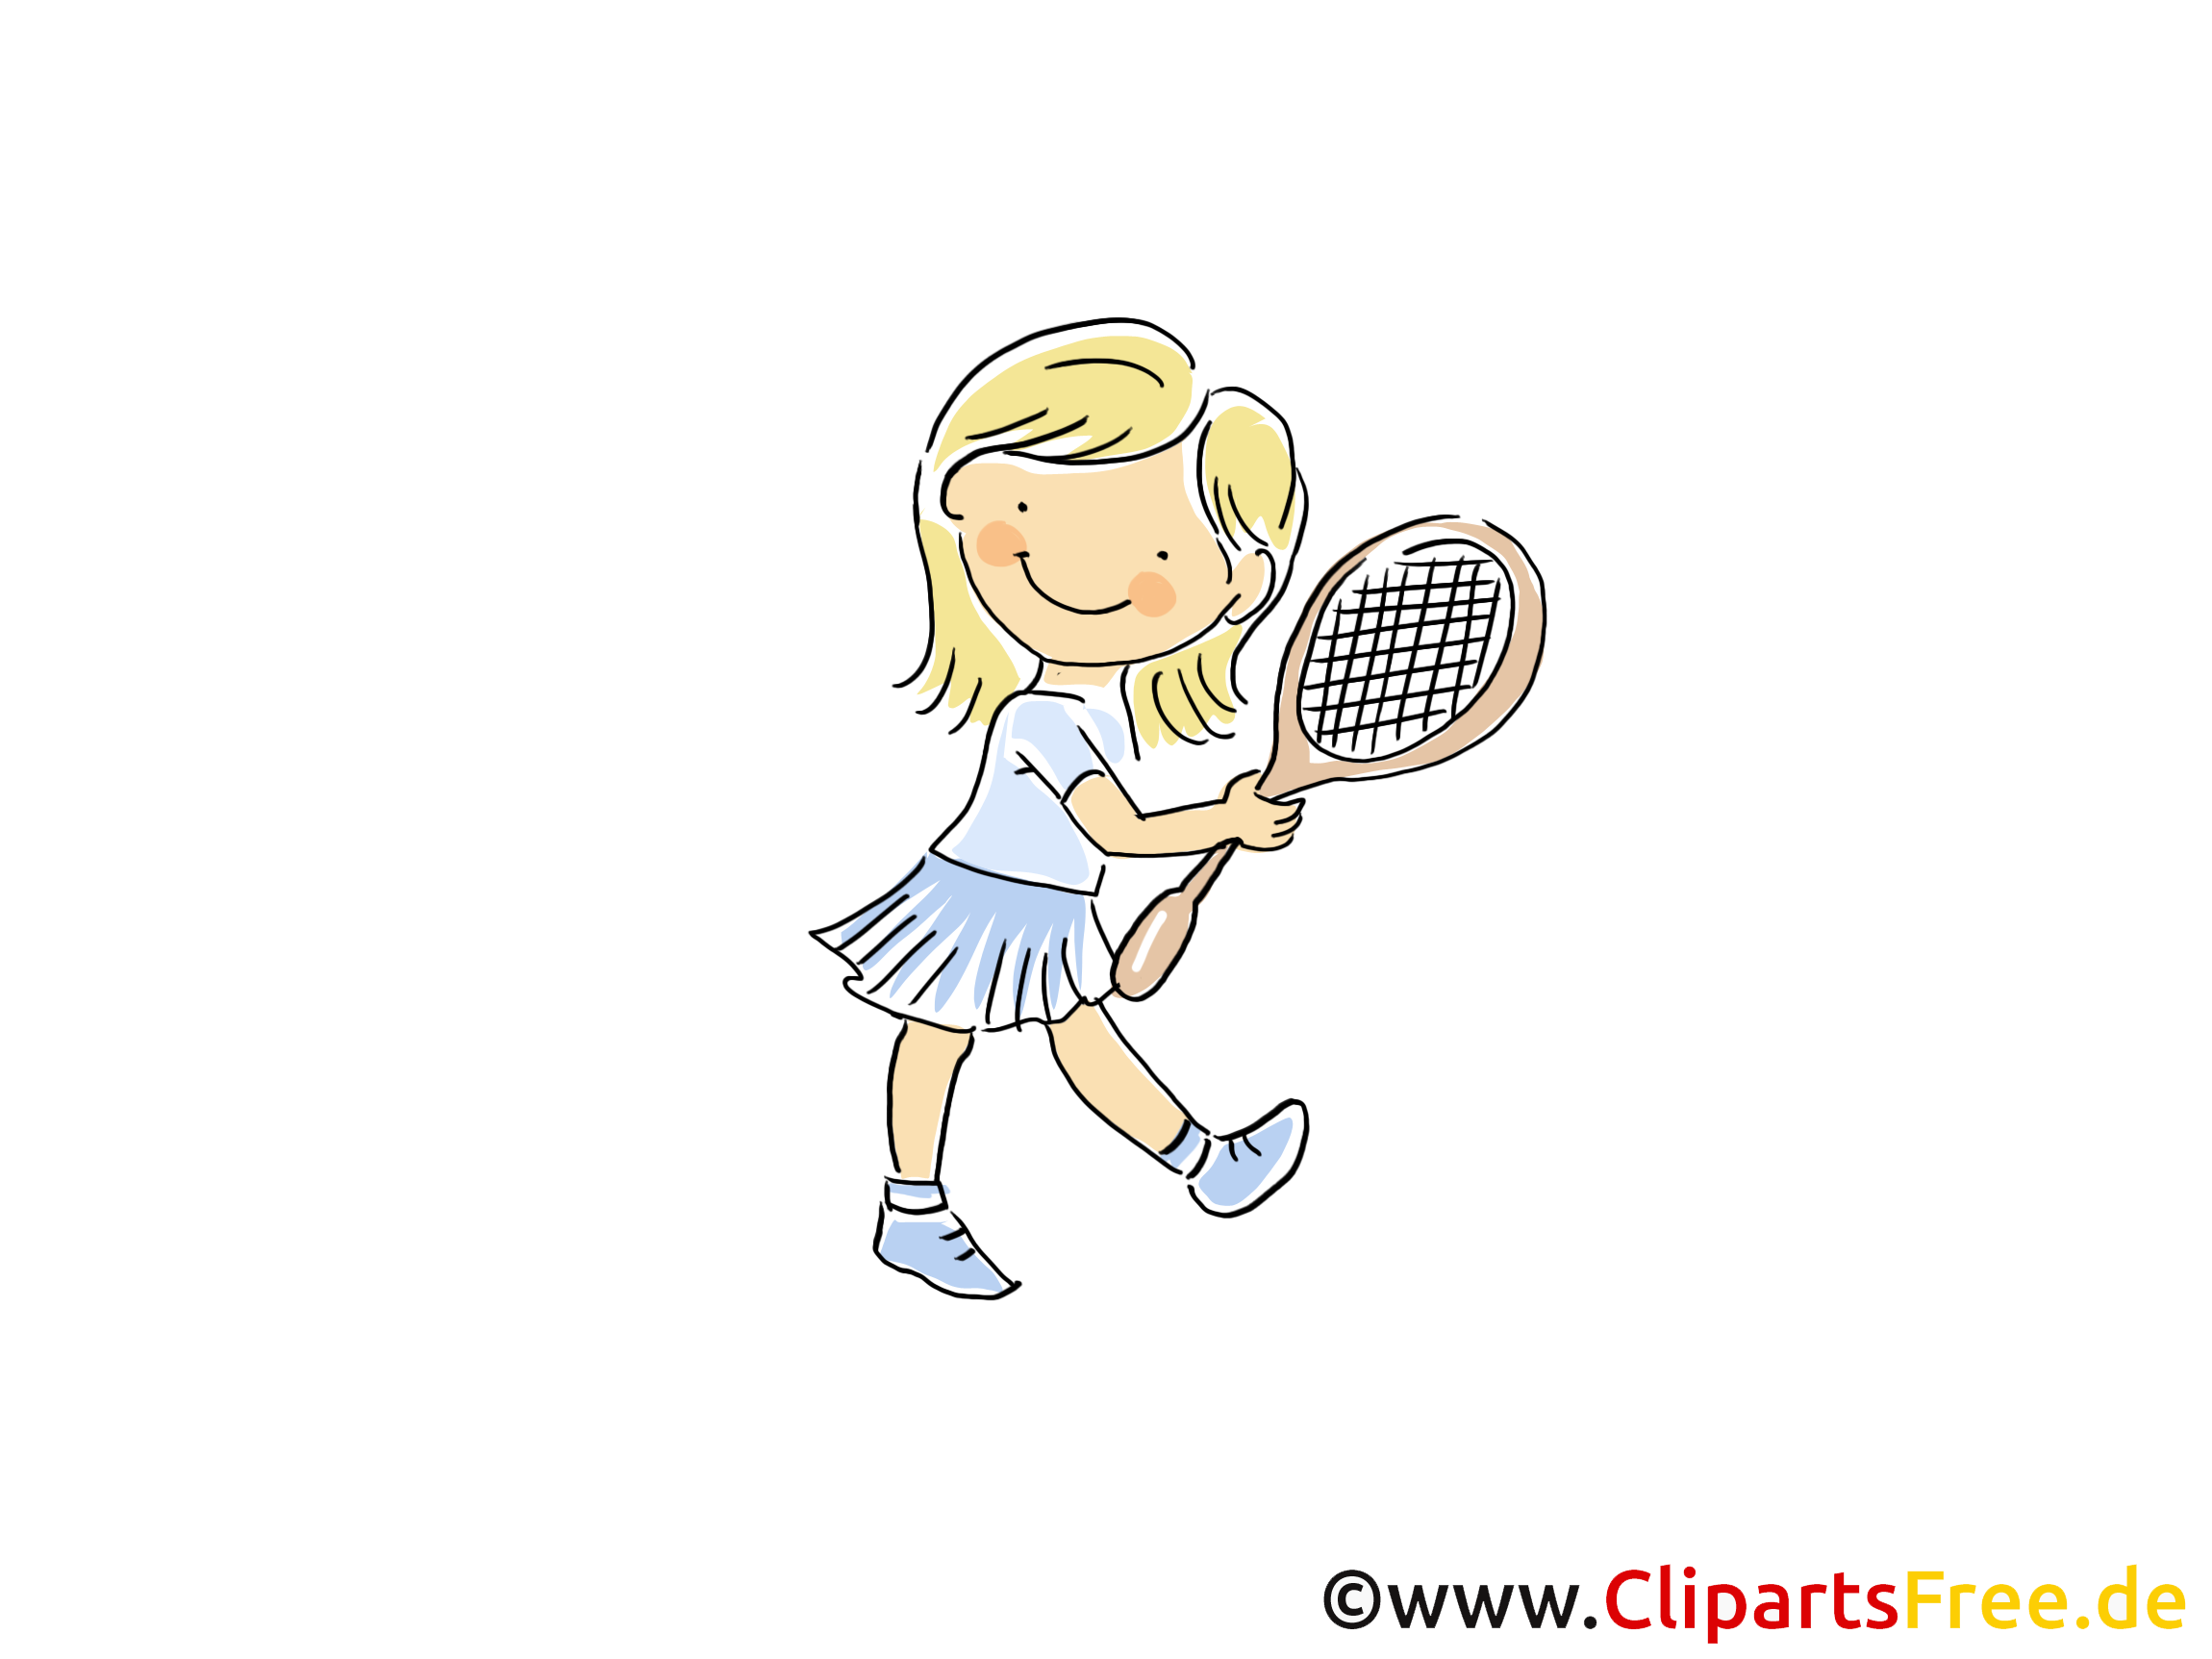 clipart kostenlos tennis - photo #16